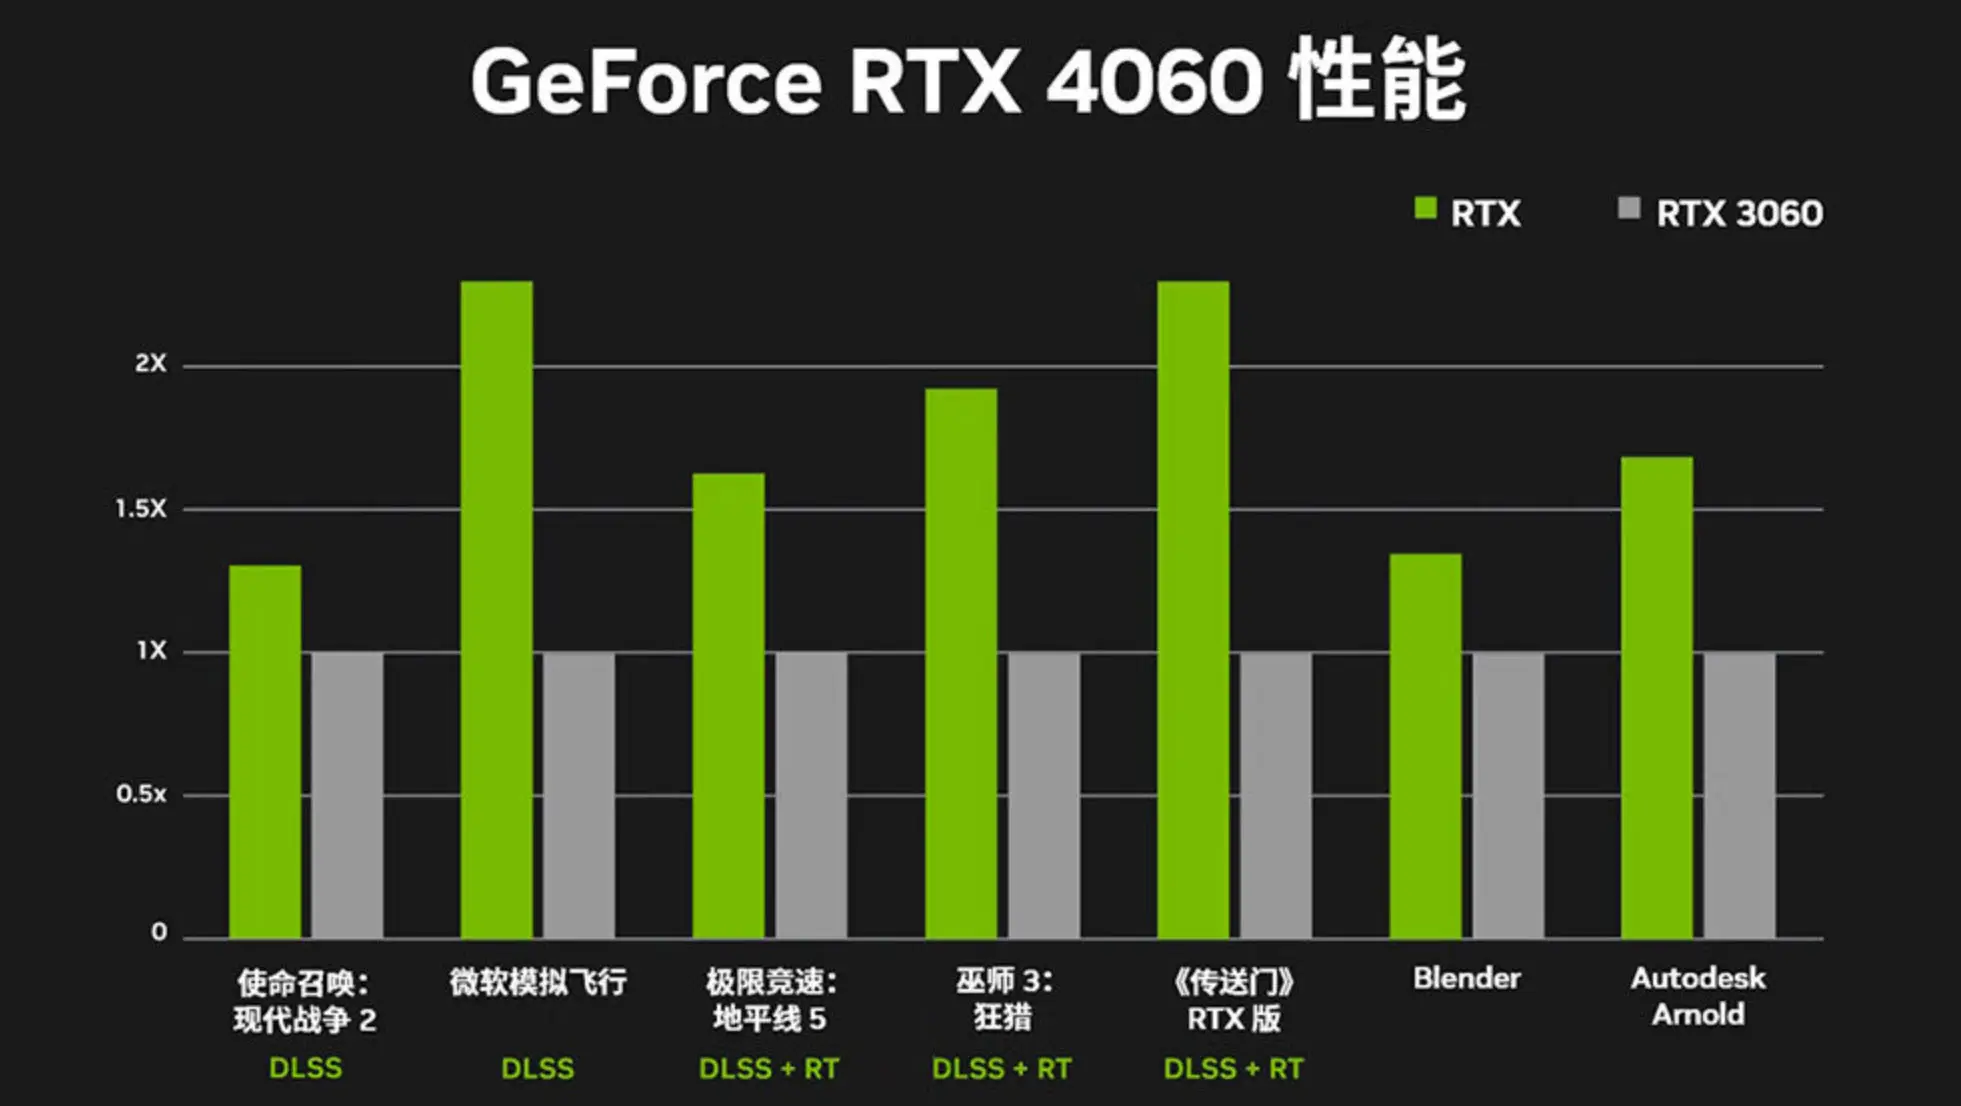 深度剖析NVIDIA GT610M显卡：性能表现、技术参数、适用领域及未来展望  第5张